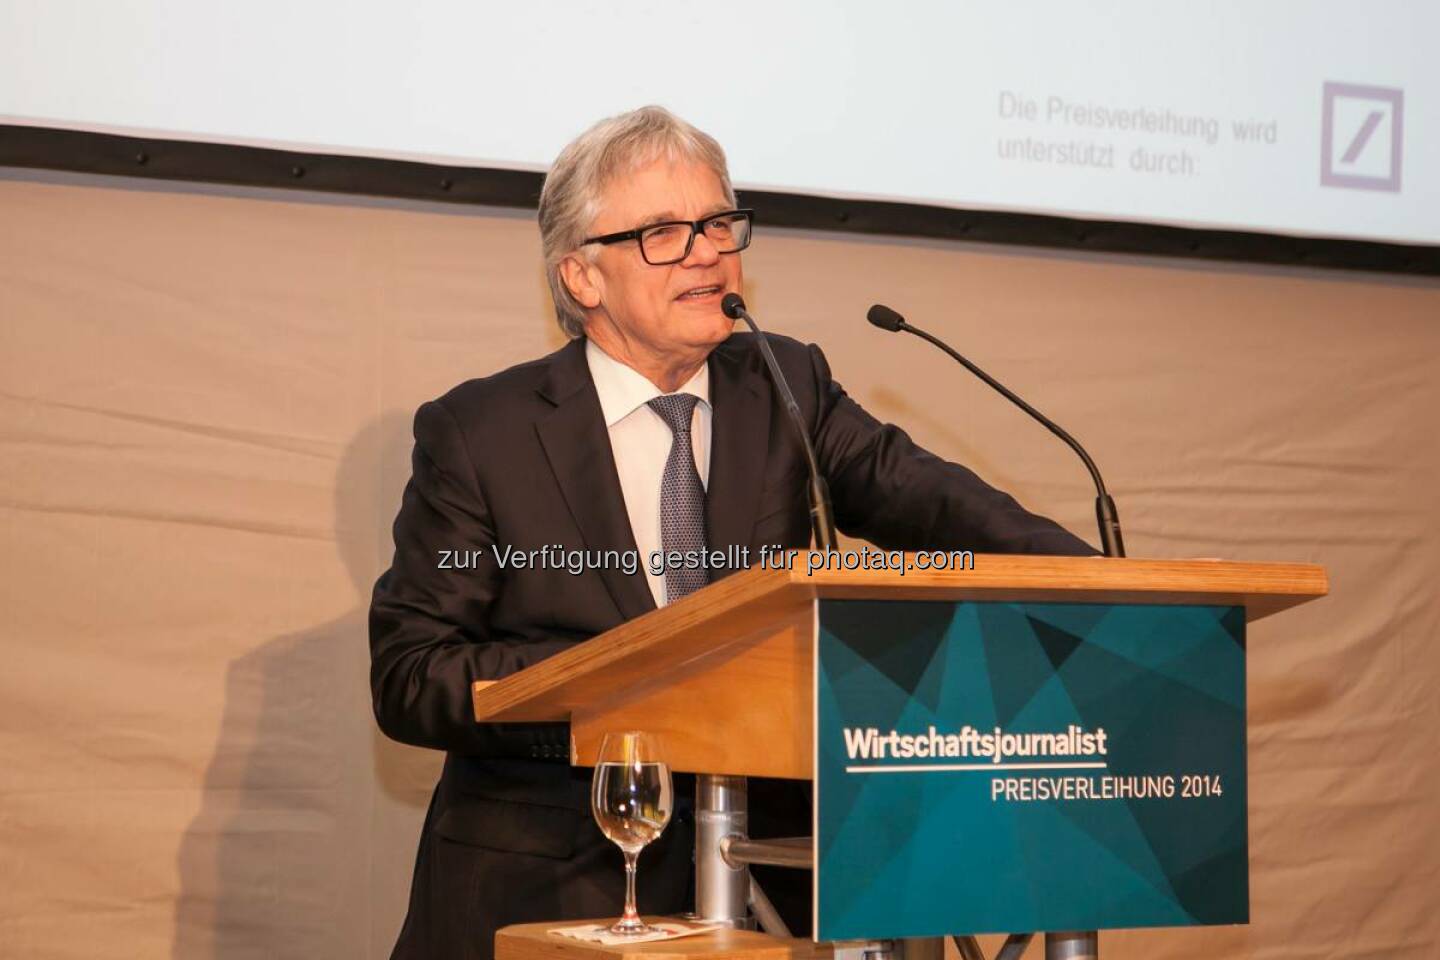 Im Rahmen der Preisverleihung des Wirtschaftsjournalisten des Jahres 2014 in Frankfurt hielt voestalpine-CEO und Weltstahlpräsident Wolfgang Eder die Keynote. http://bit.ly/1EvE5V1  Source: http://facebook.com/voestalpine